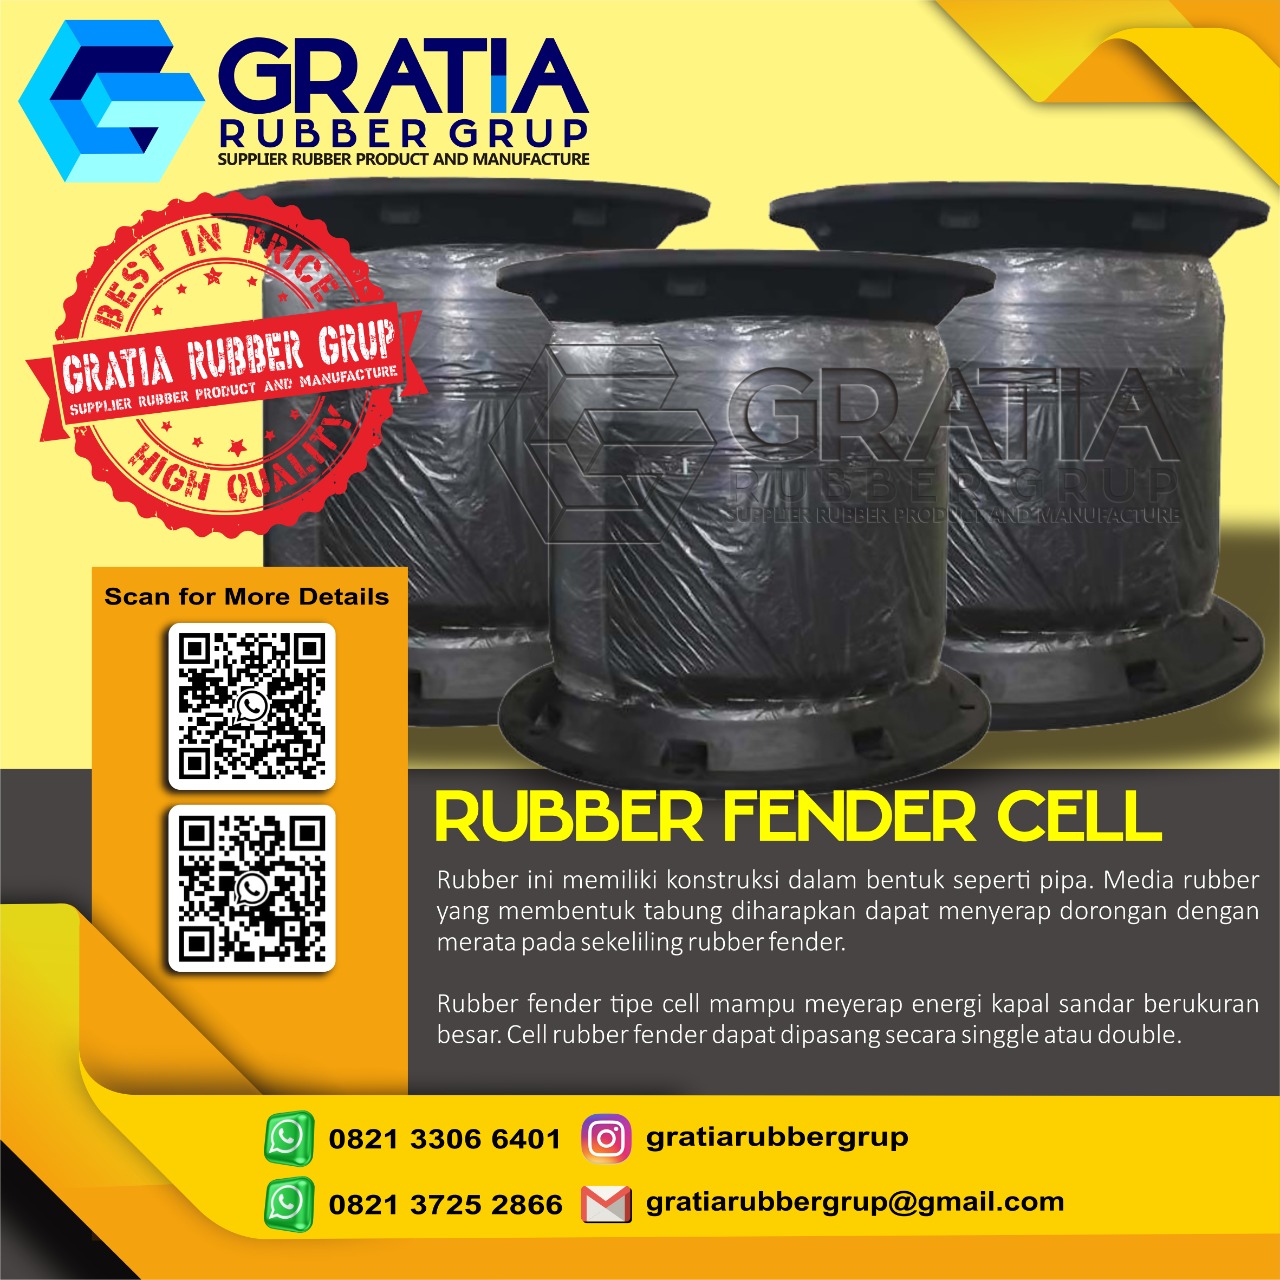 Distributor Rubber Fender Murah Dan Berkualitas  Melayani Pengiriman Ke Gorontalo Sulawesi Hub 0821 3306 0461